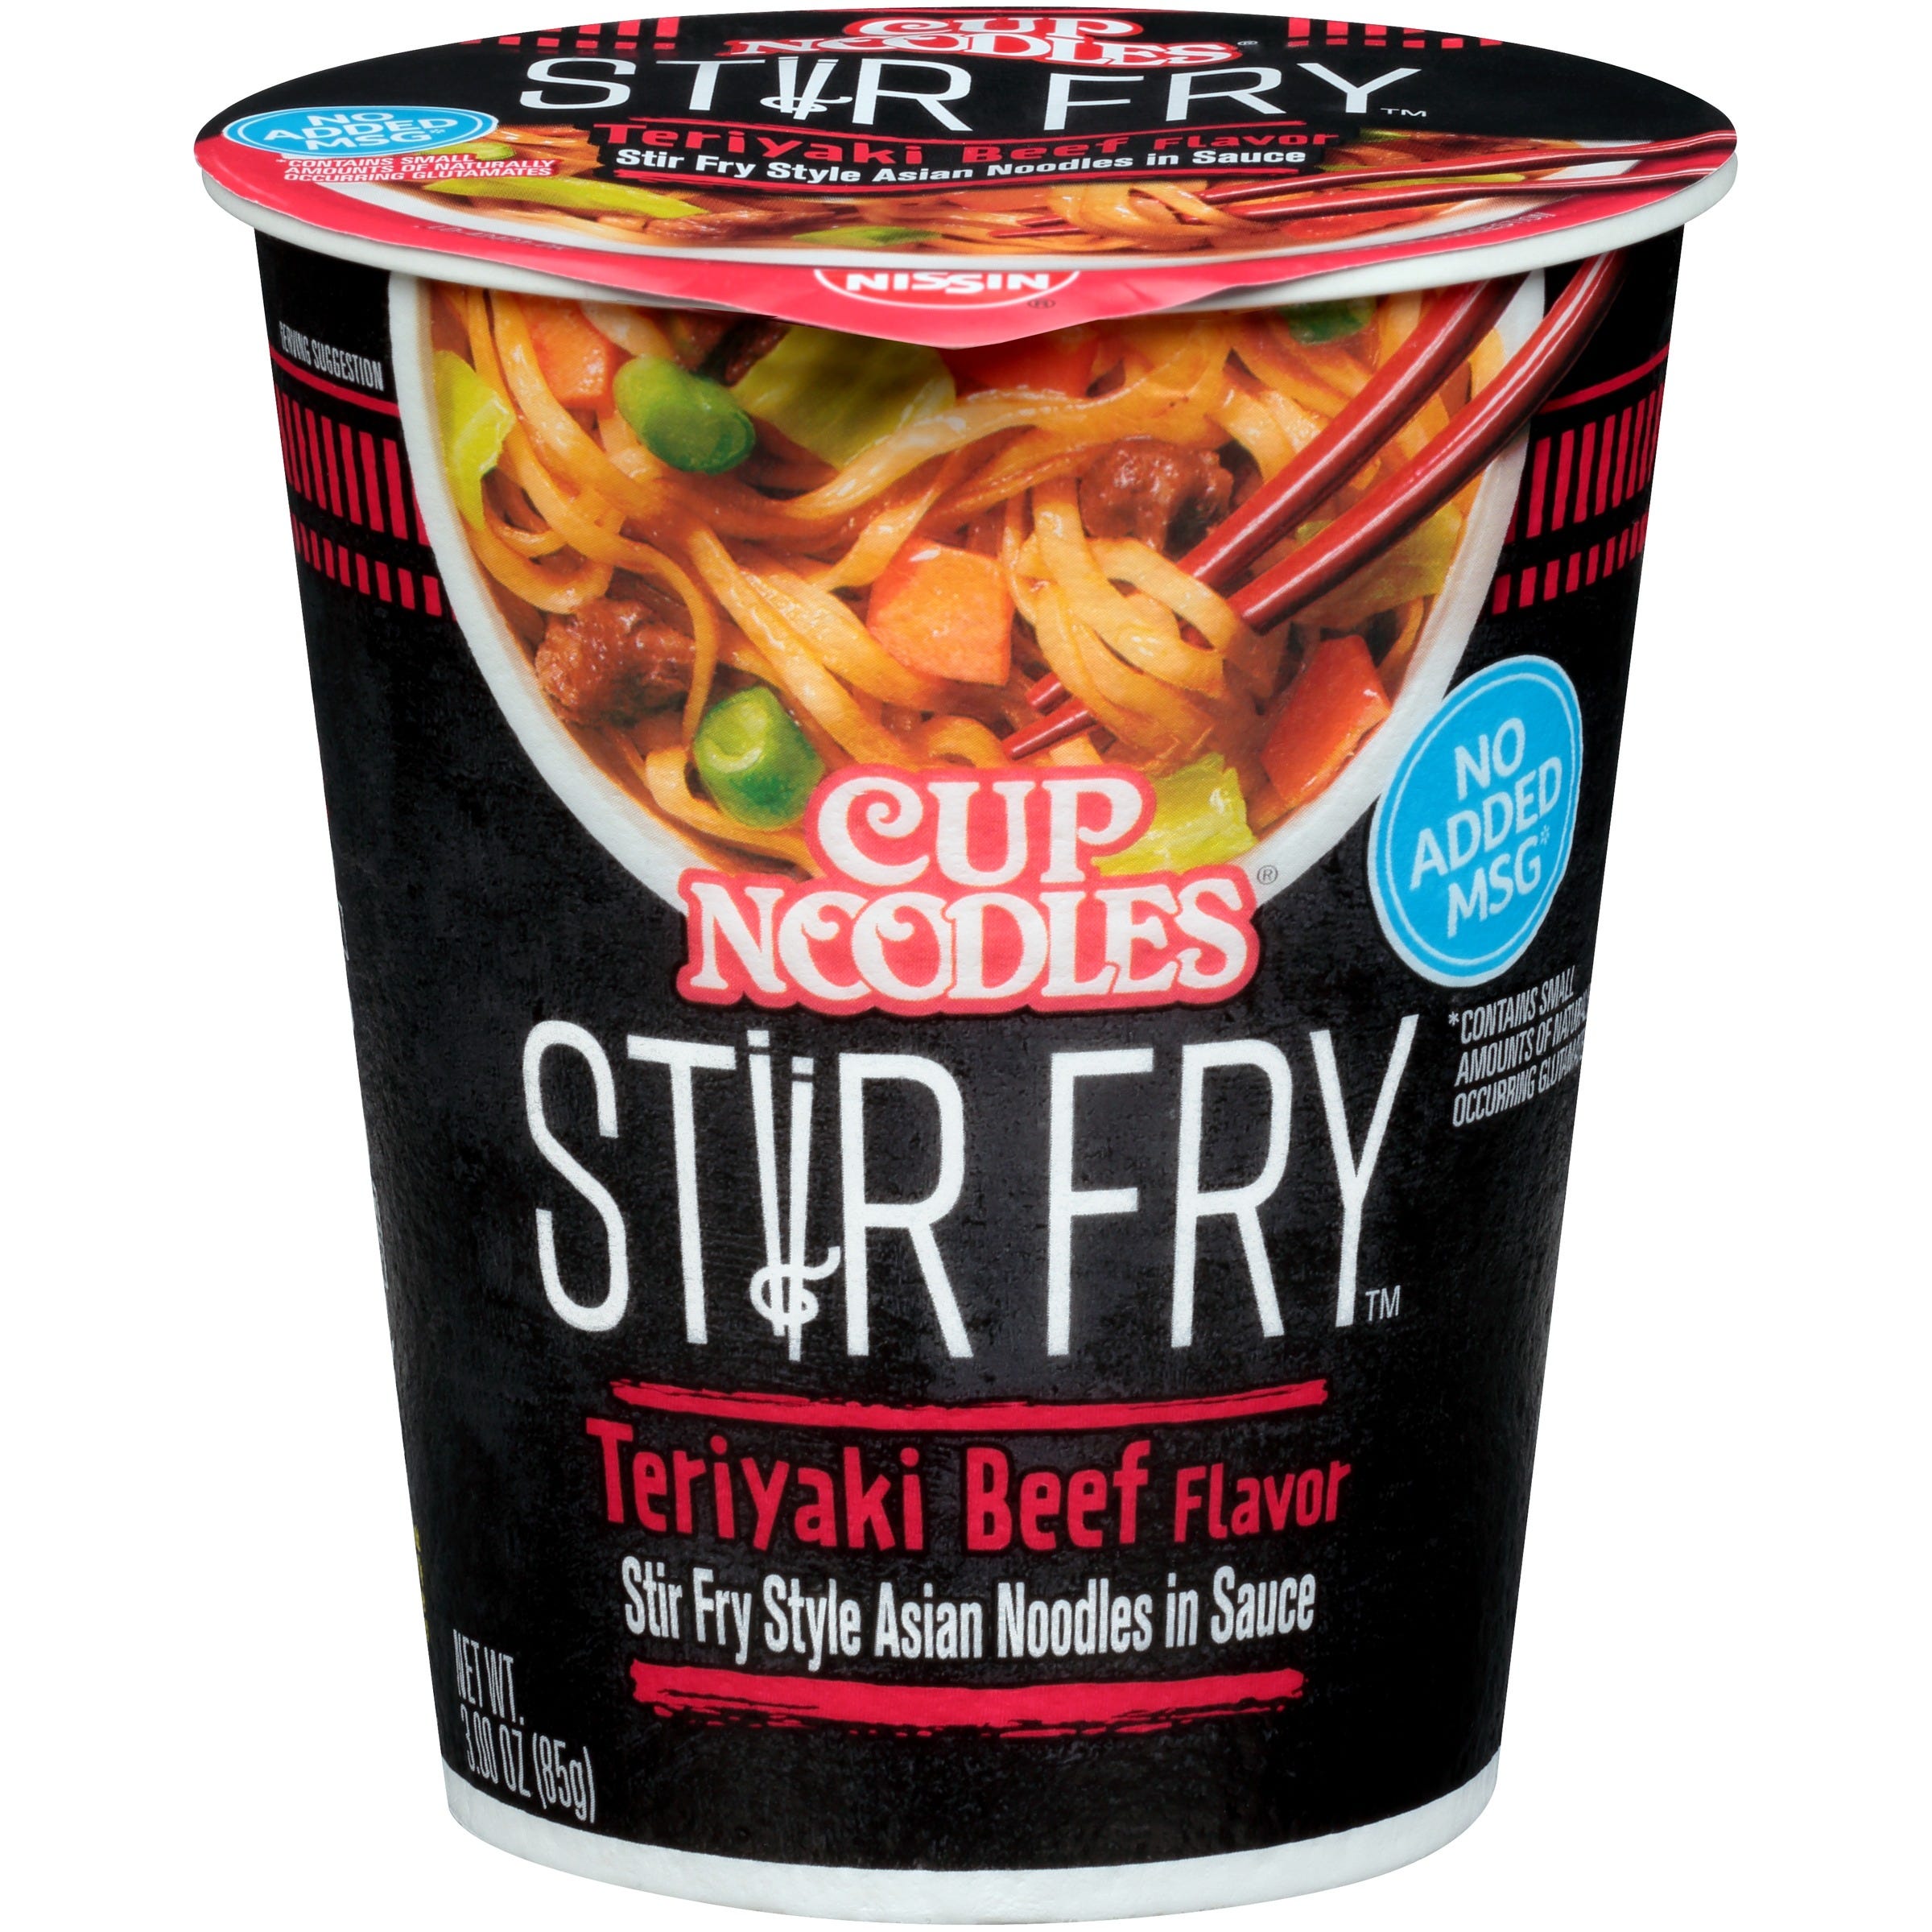 Nissin Cup Noodles Stir Fry, Teriyaki Beef - 3 oz